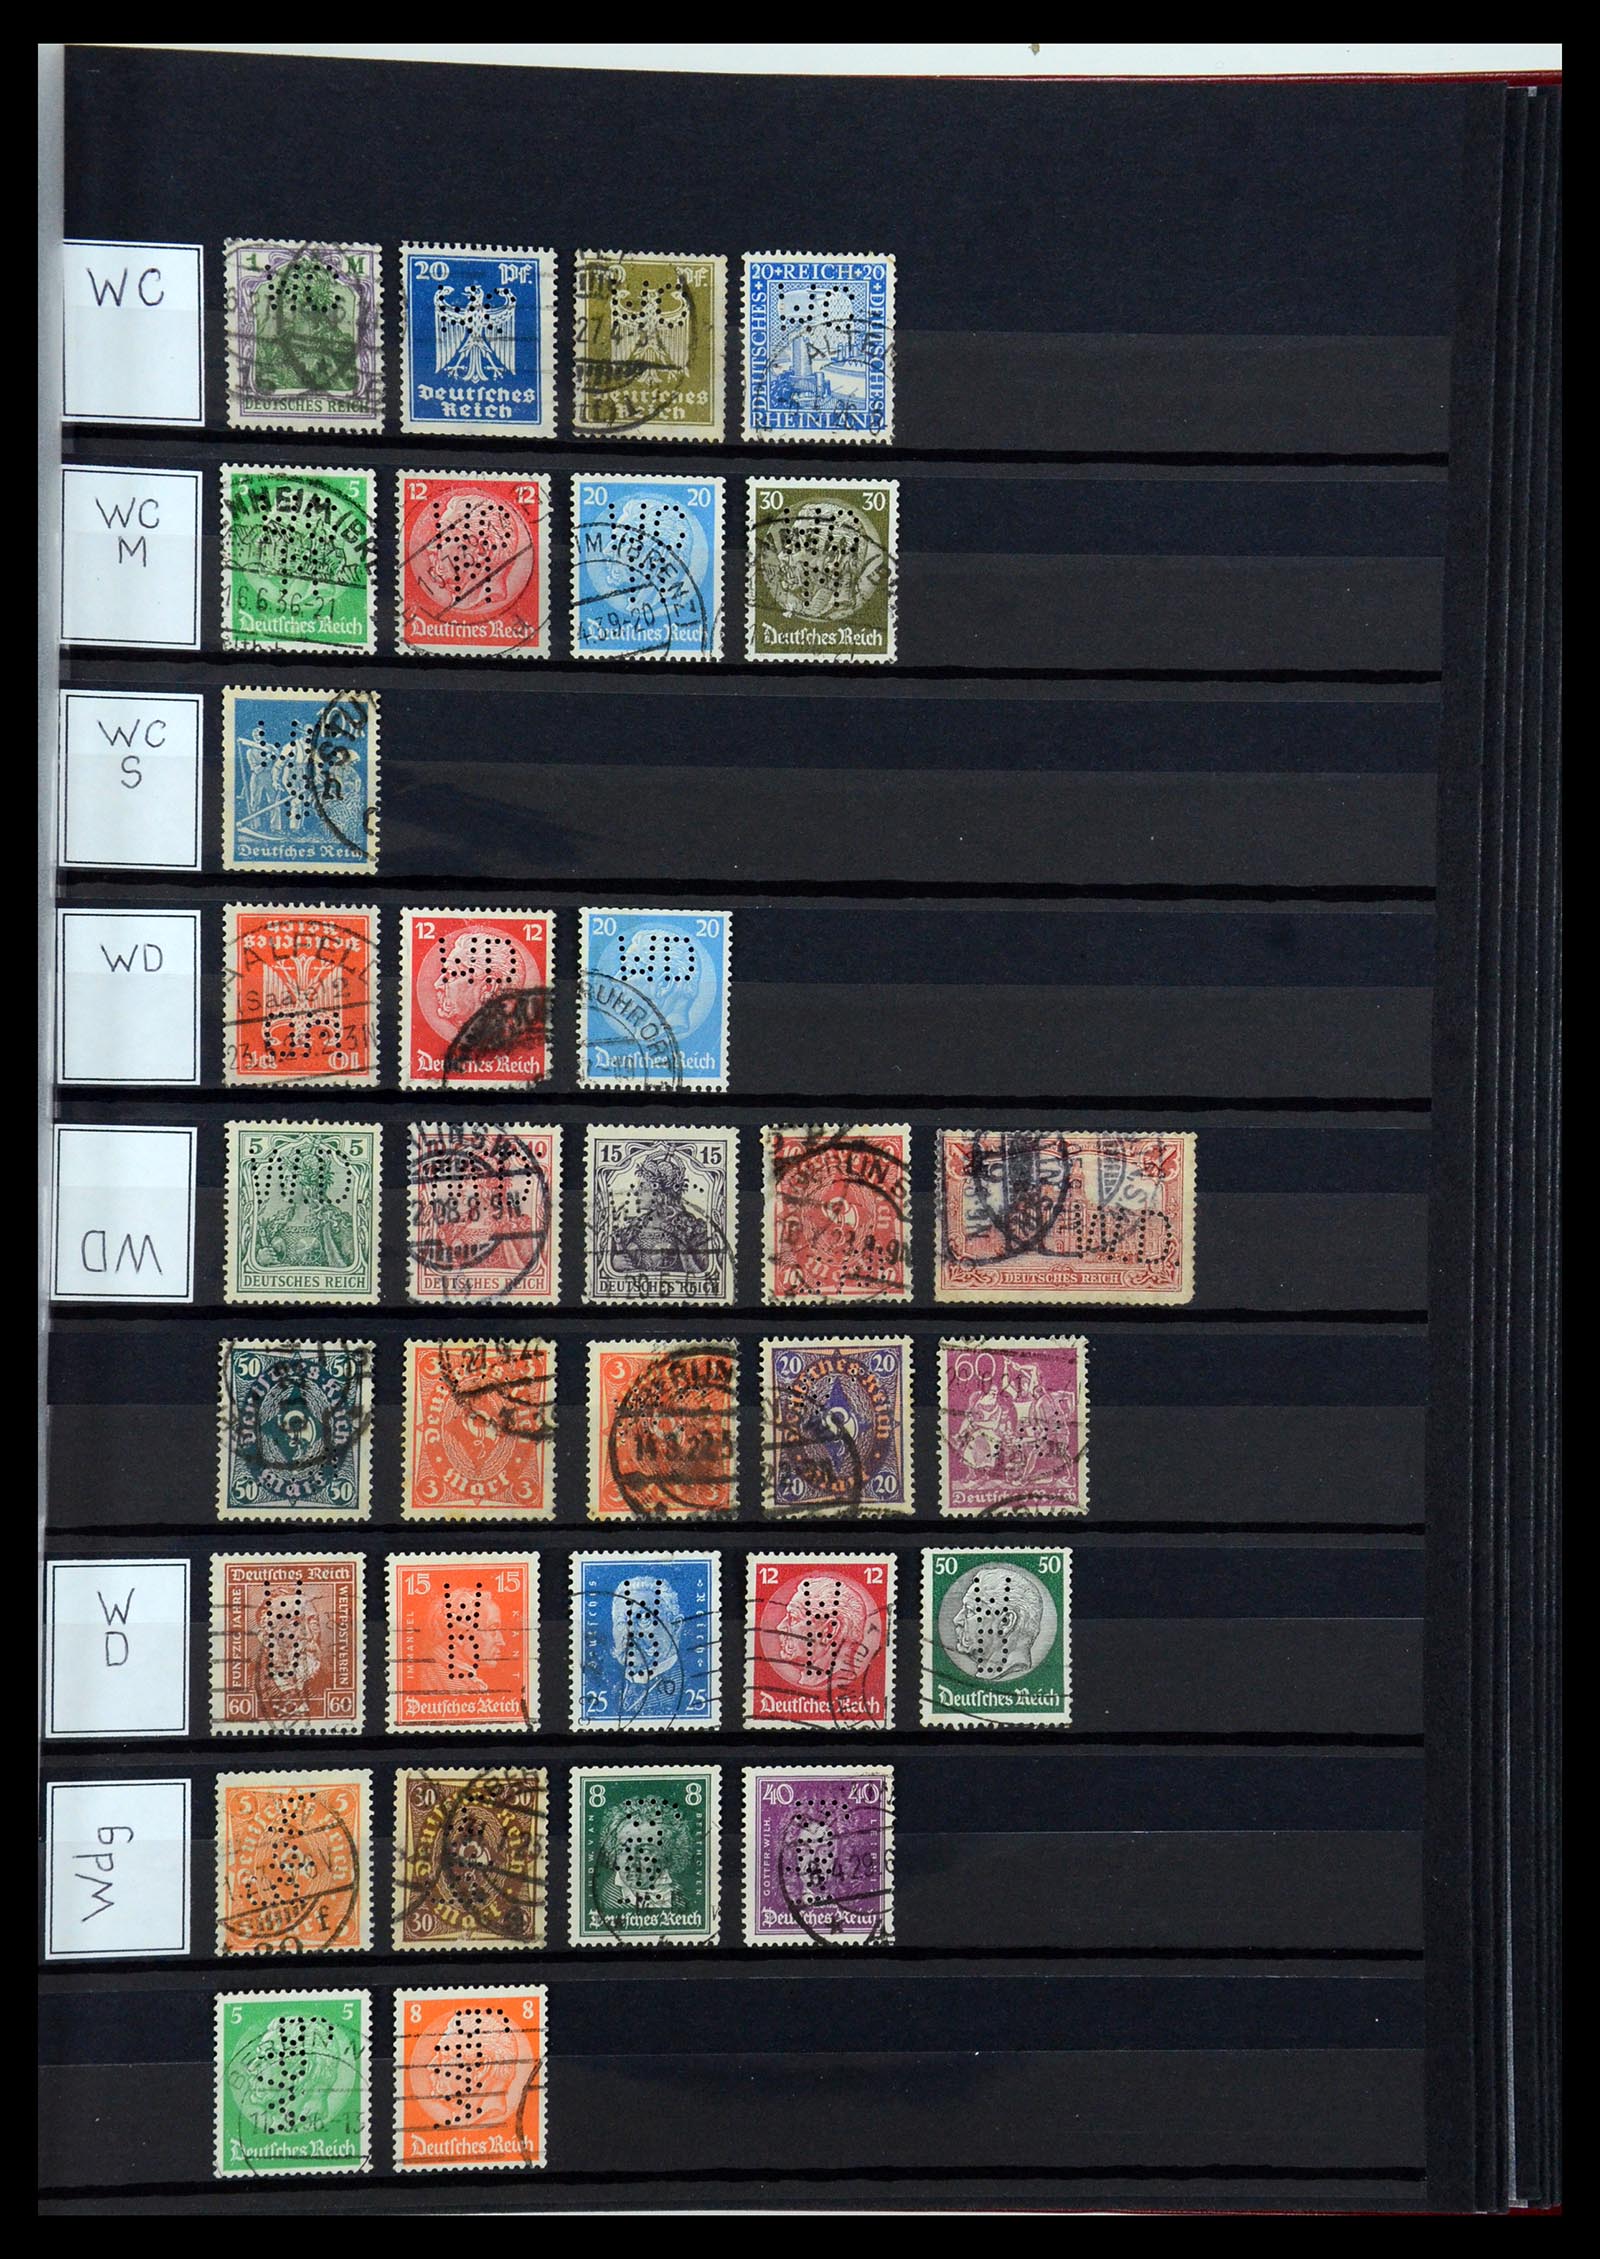 36405 336 - Stamp collection 36405 German Reich perfins 1880-1945.